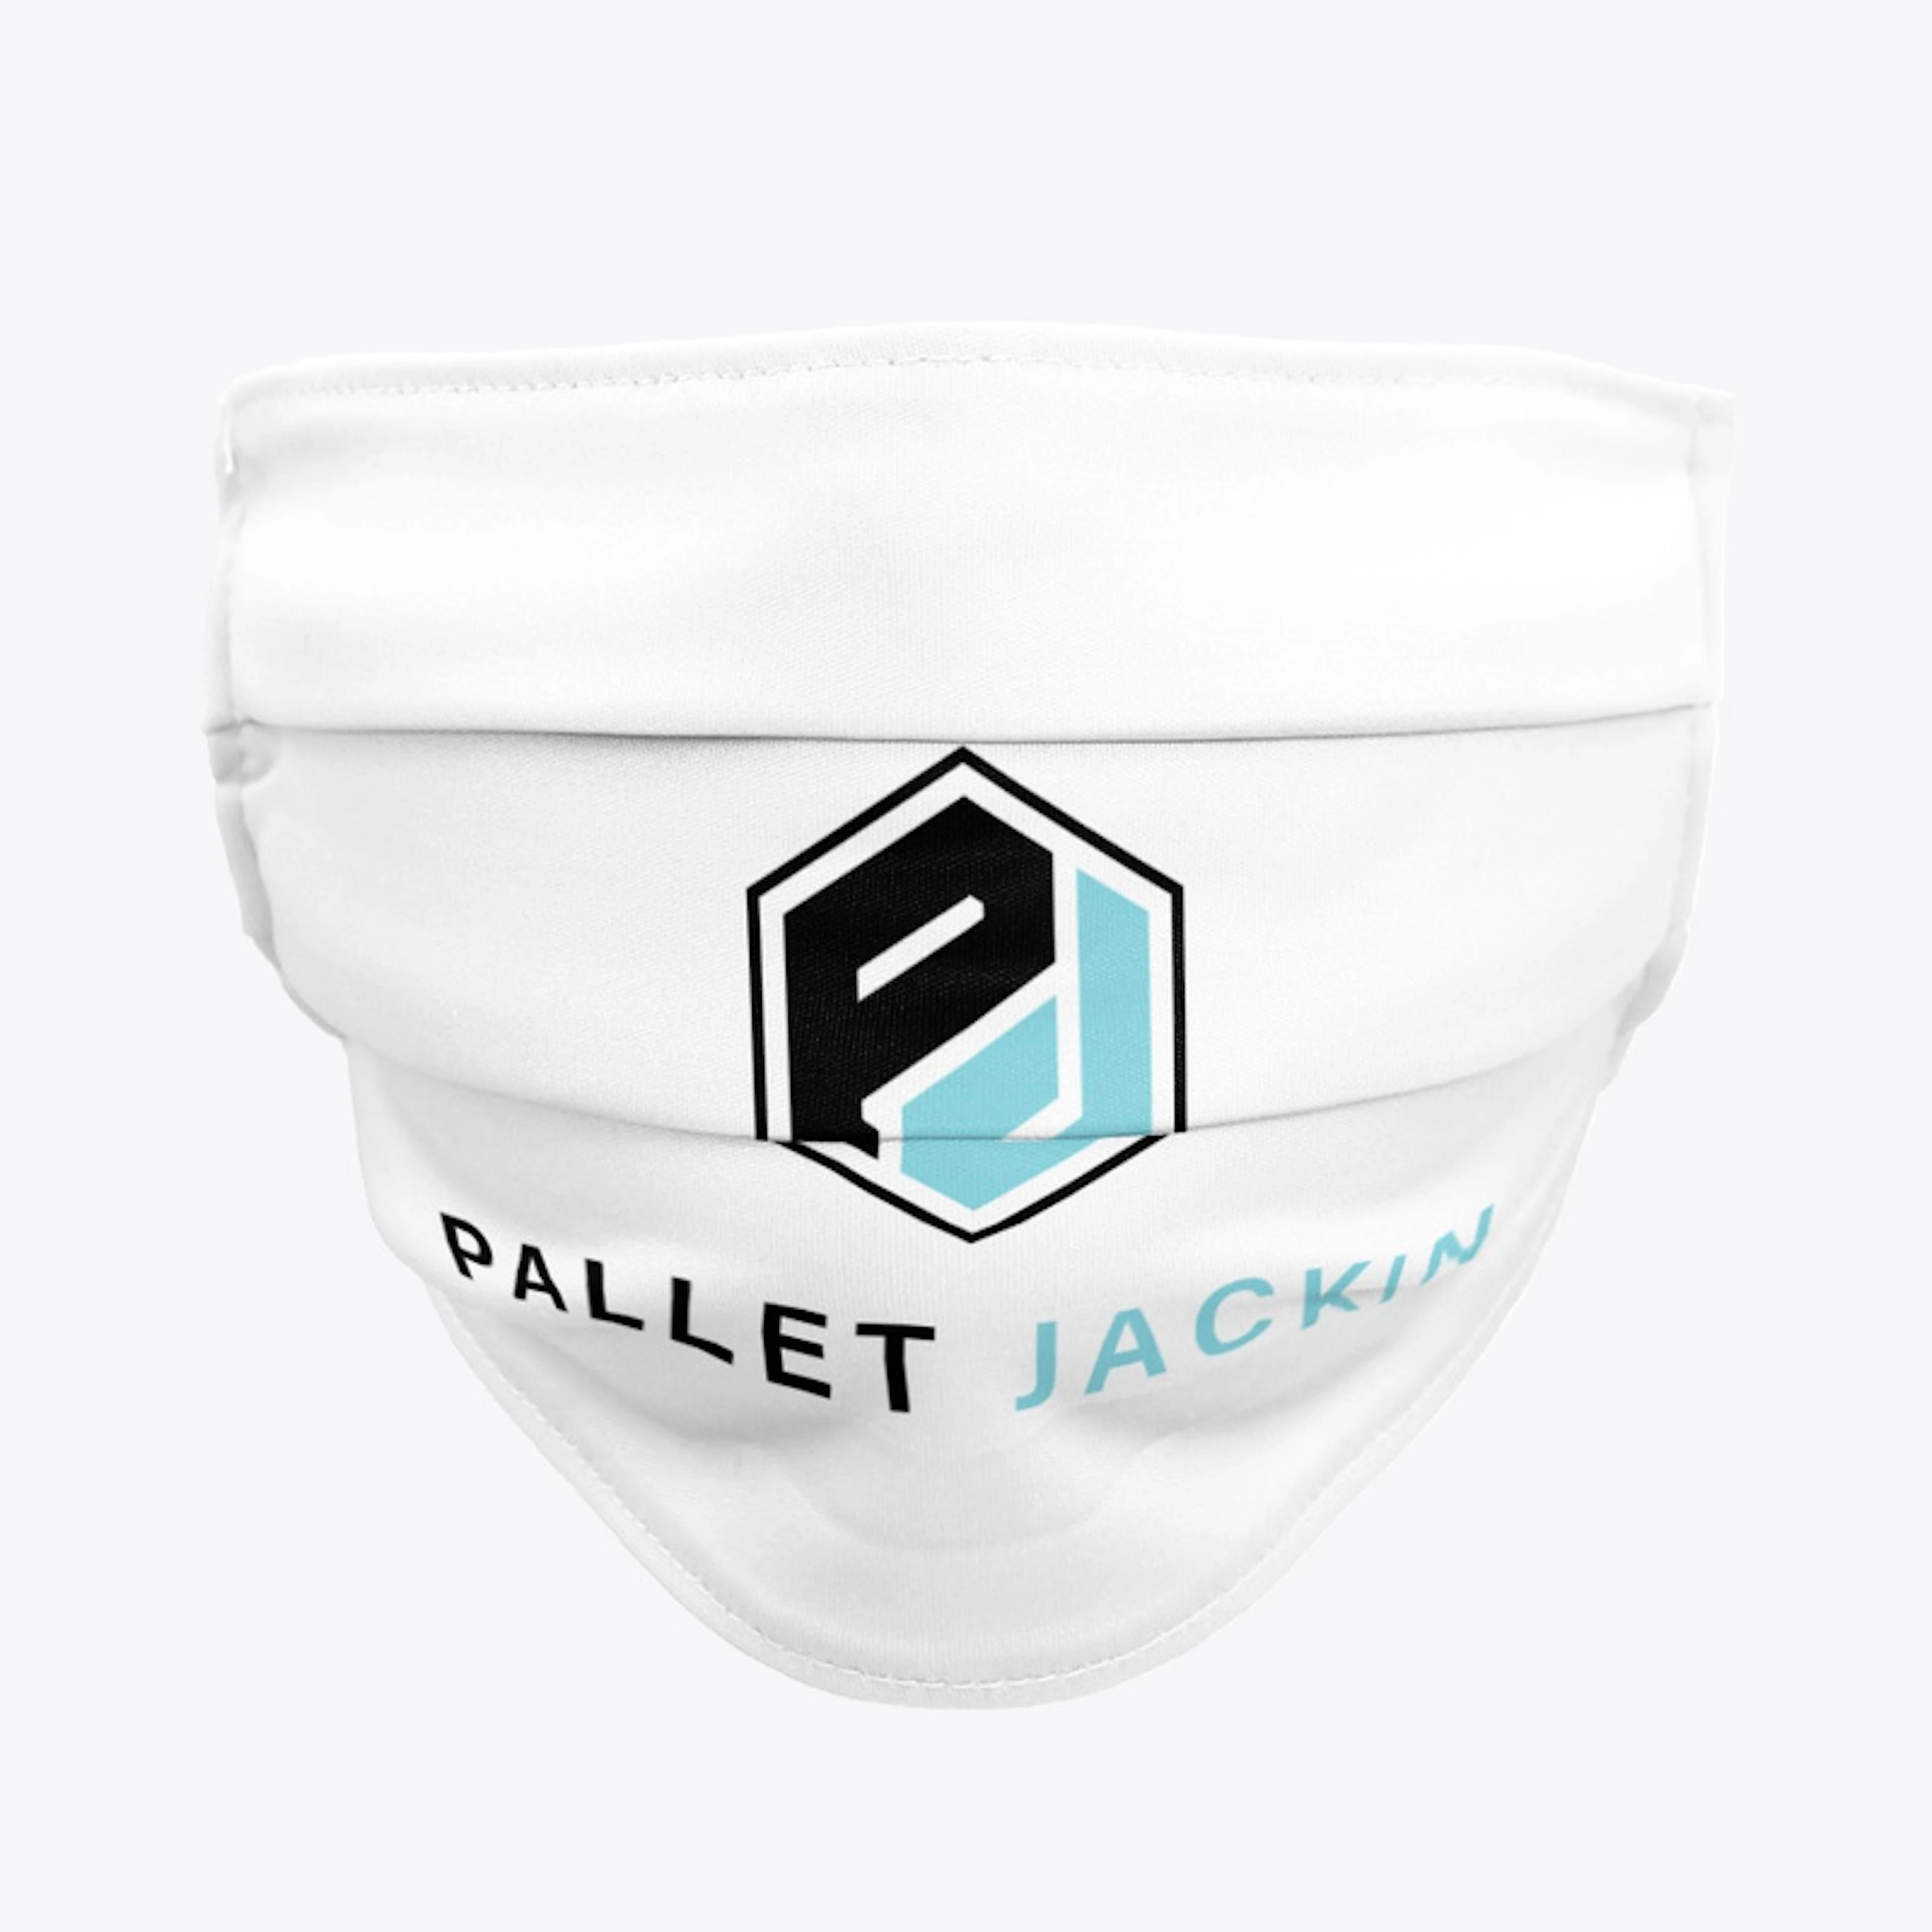 Pallet Jackin Masks